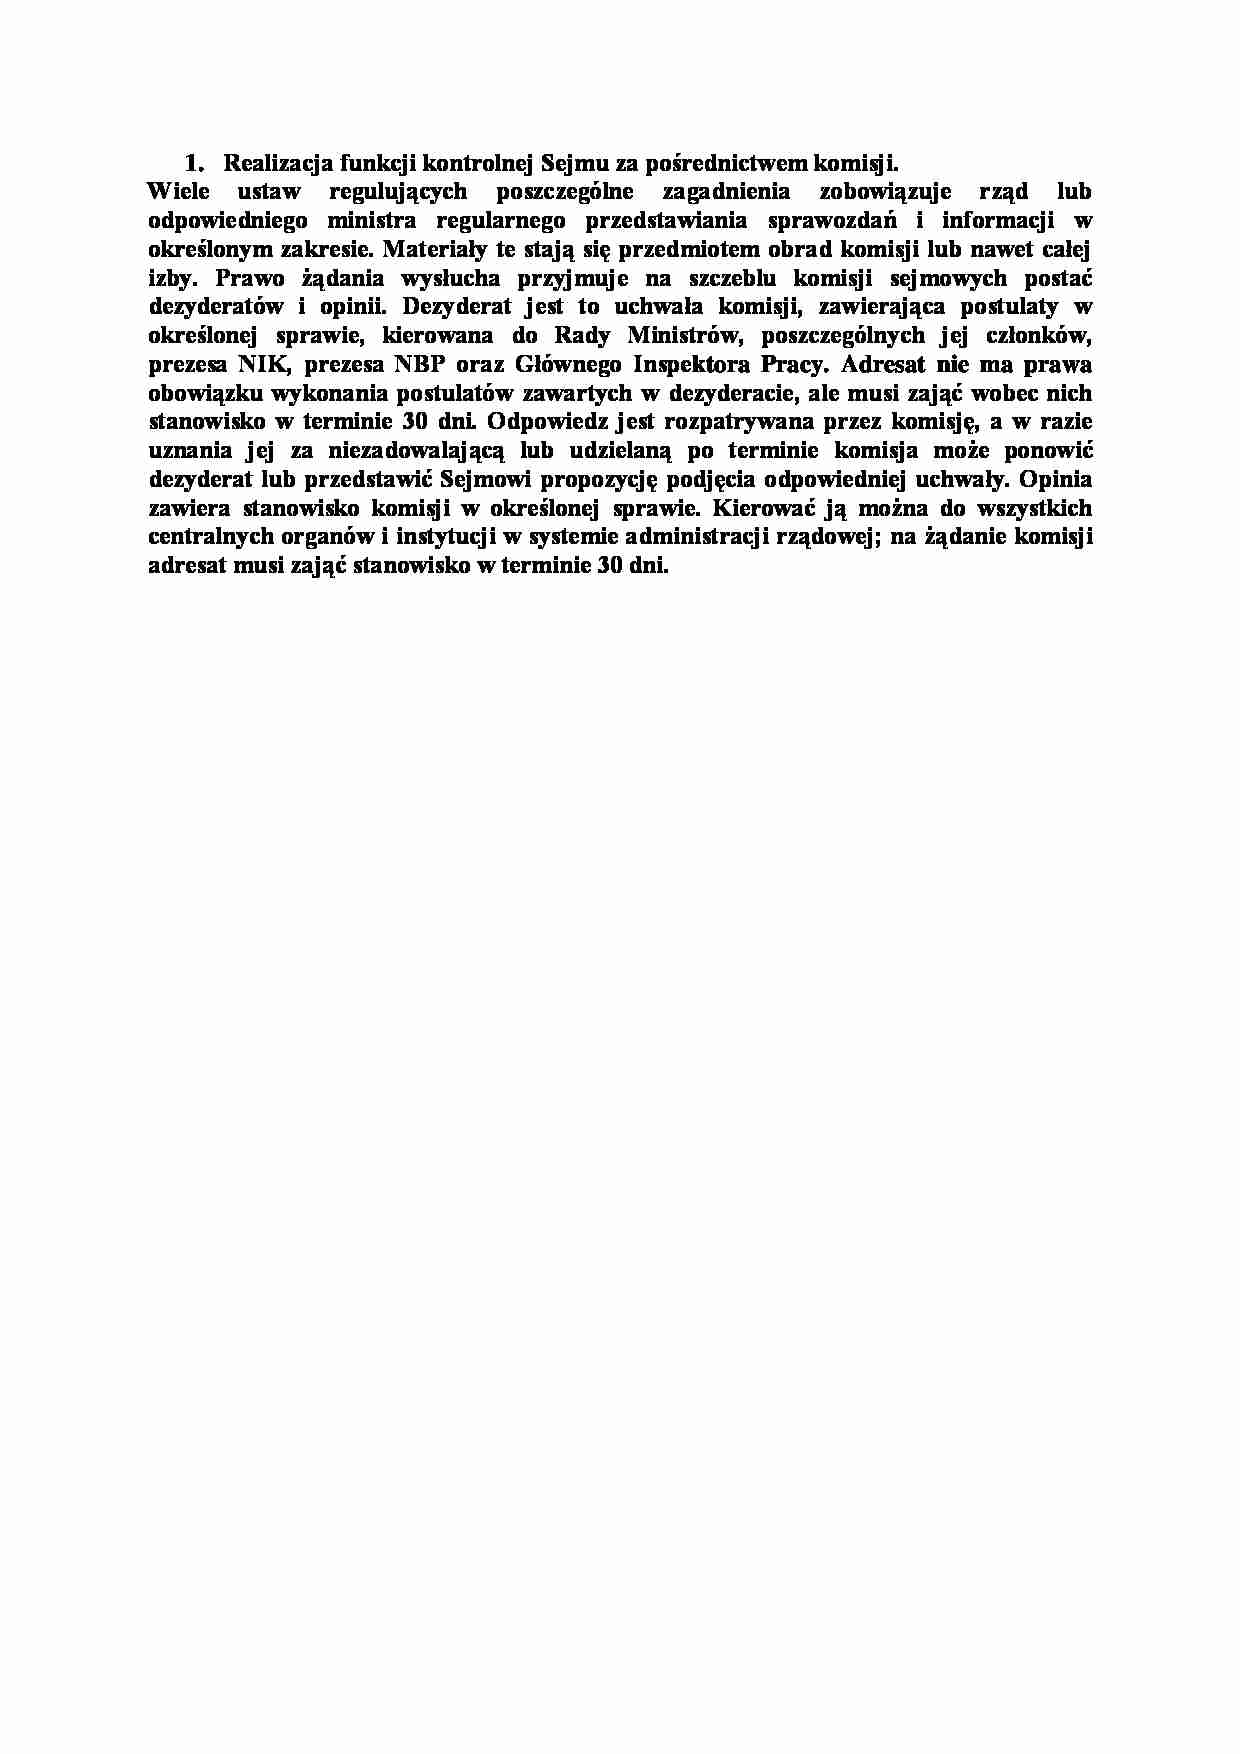 Realizacja funkcji kontrolnej Sejmu za pośrednictwem komisji-opracowanie - strona 1